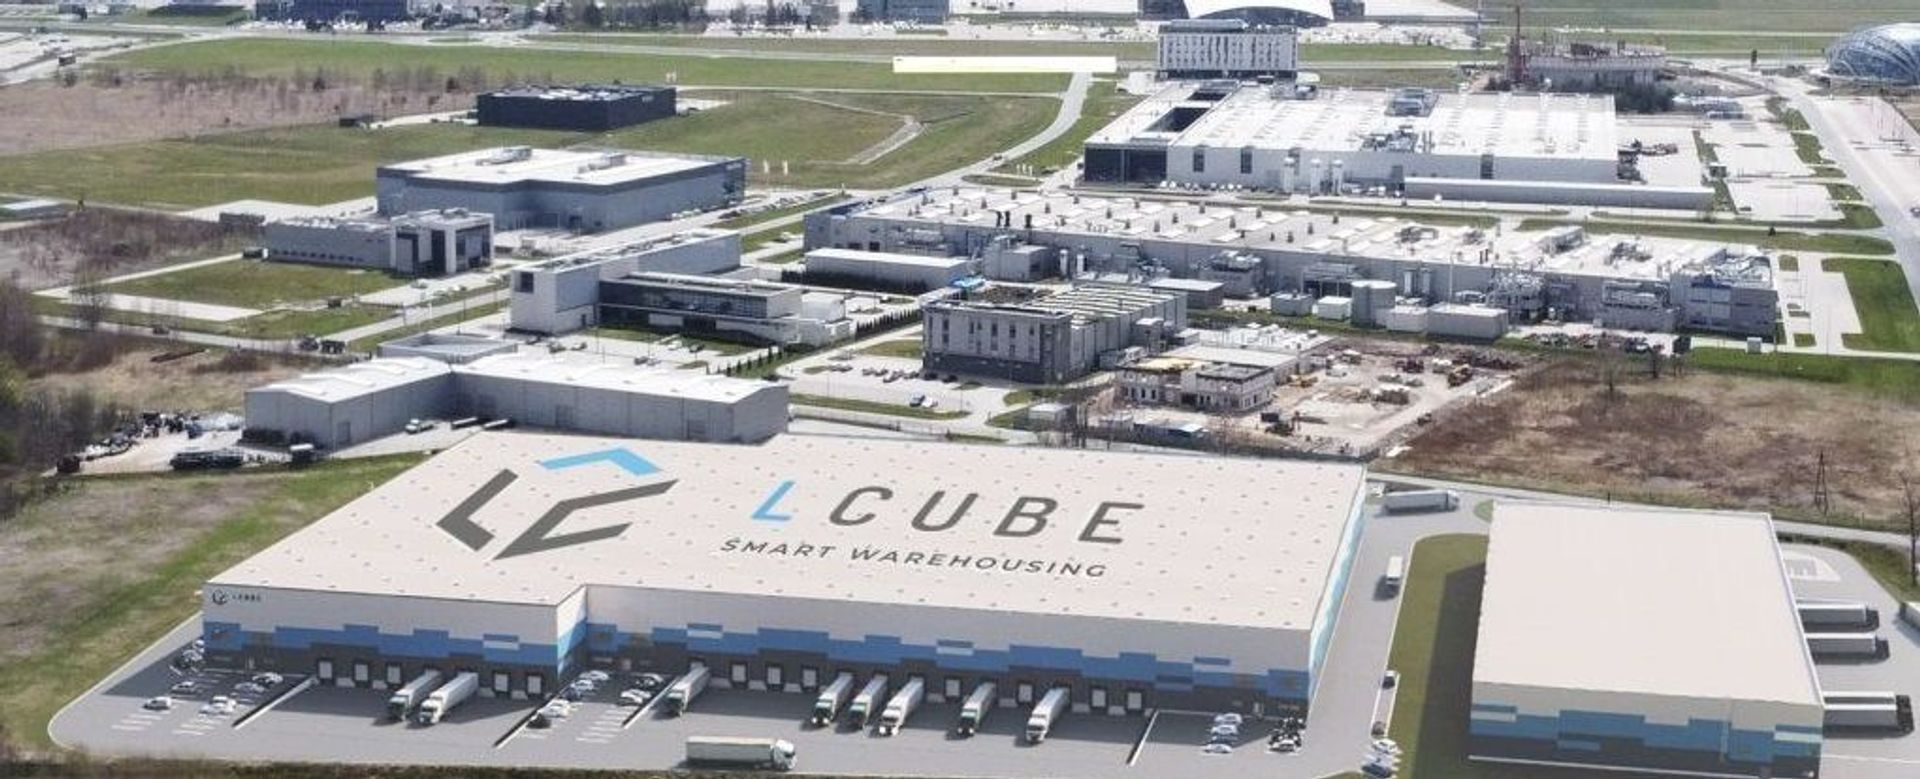 Druga faza kompleksu LCube Rzeszów Airport z pozwoleniem na użytkowanie